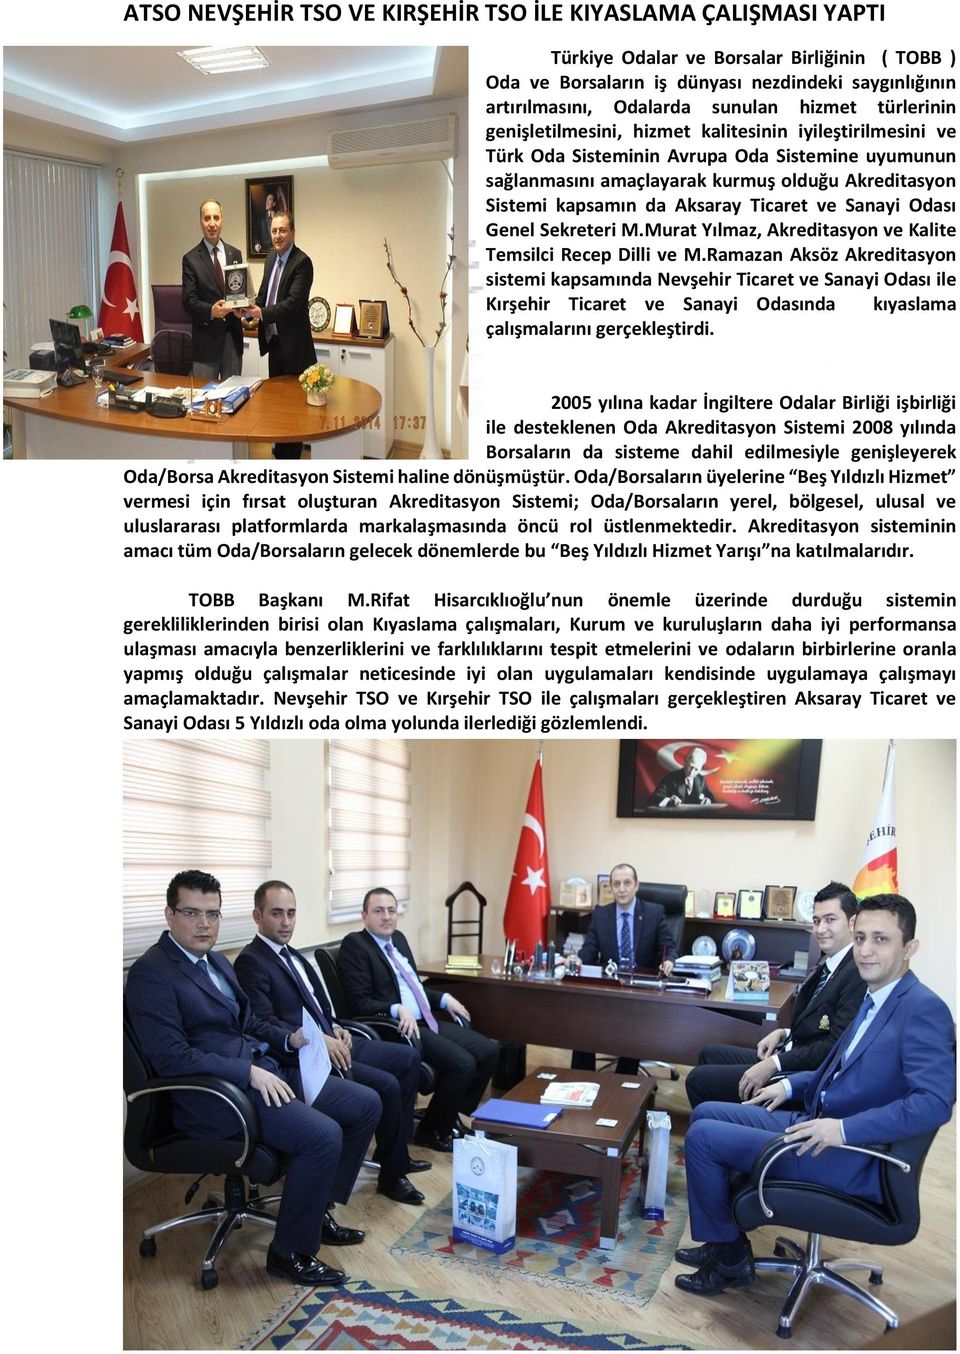 Aksaray Ticaret ve Sanayi Odası Genel Sekreteri M.Murat Yılmaz, Akreditasyon ve Kalite Temsilci Recep Dilli ve M.